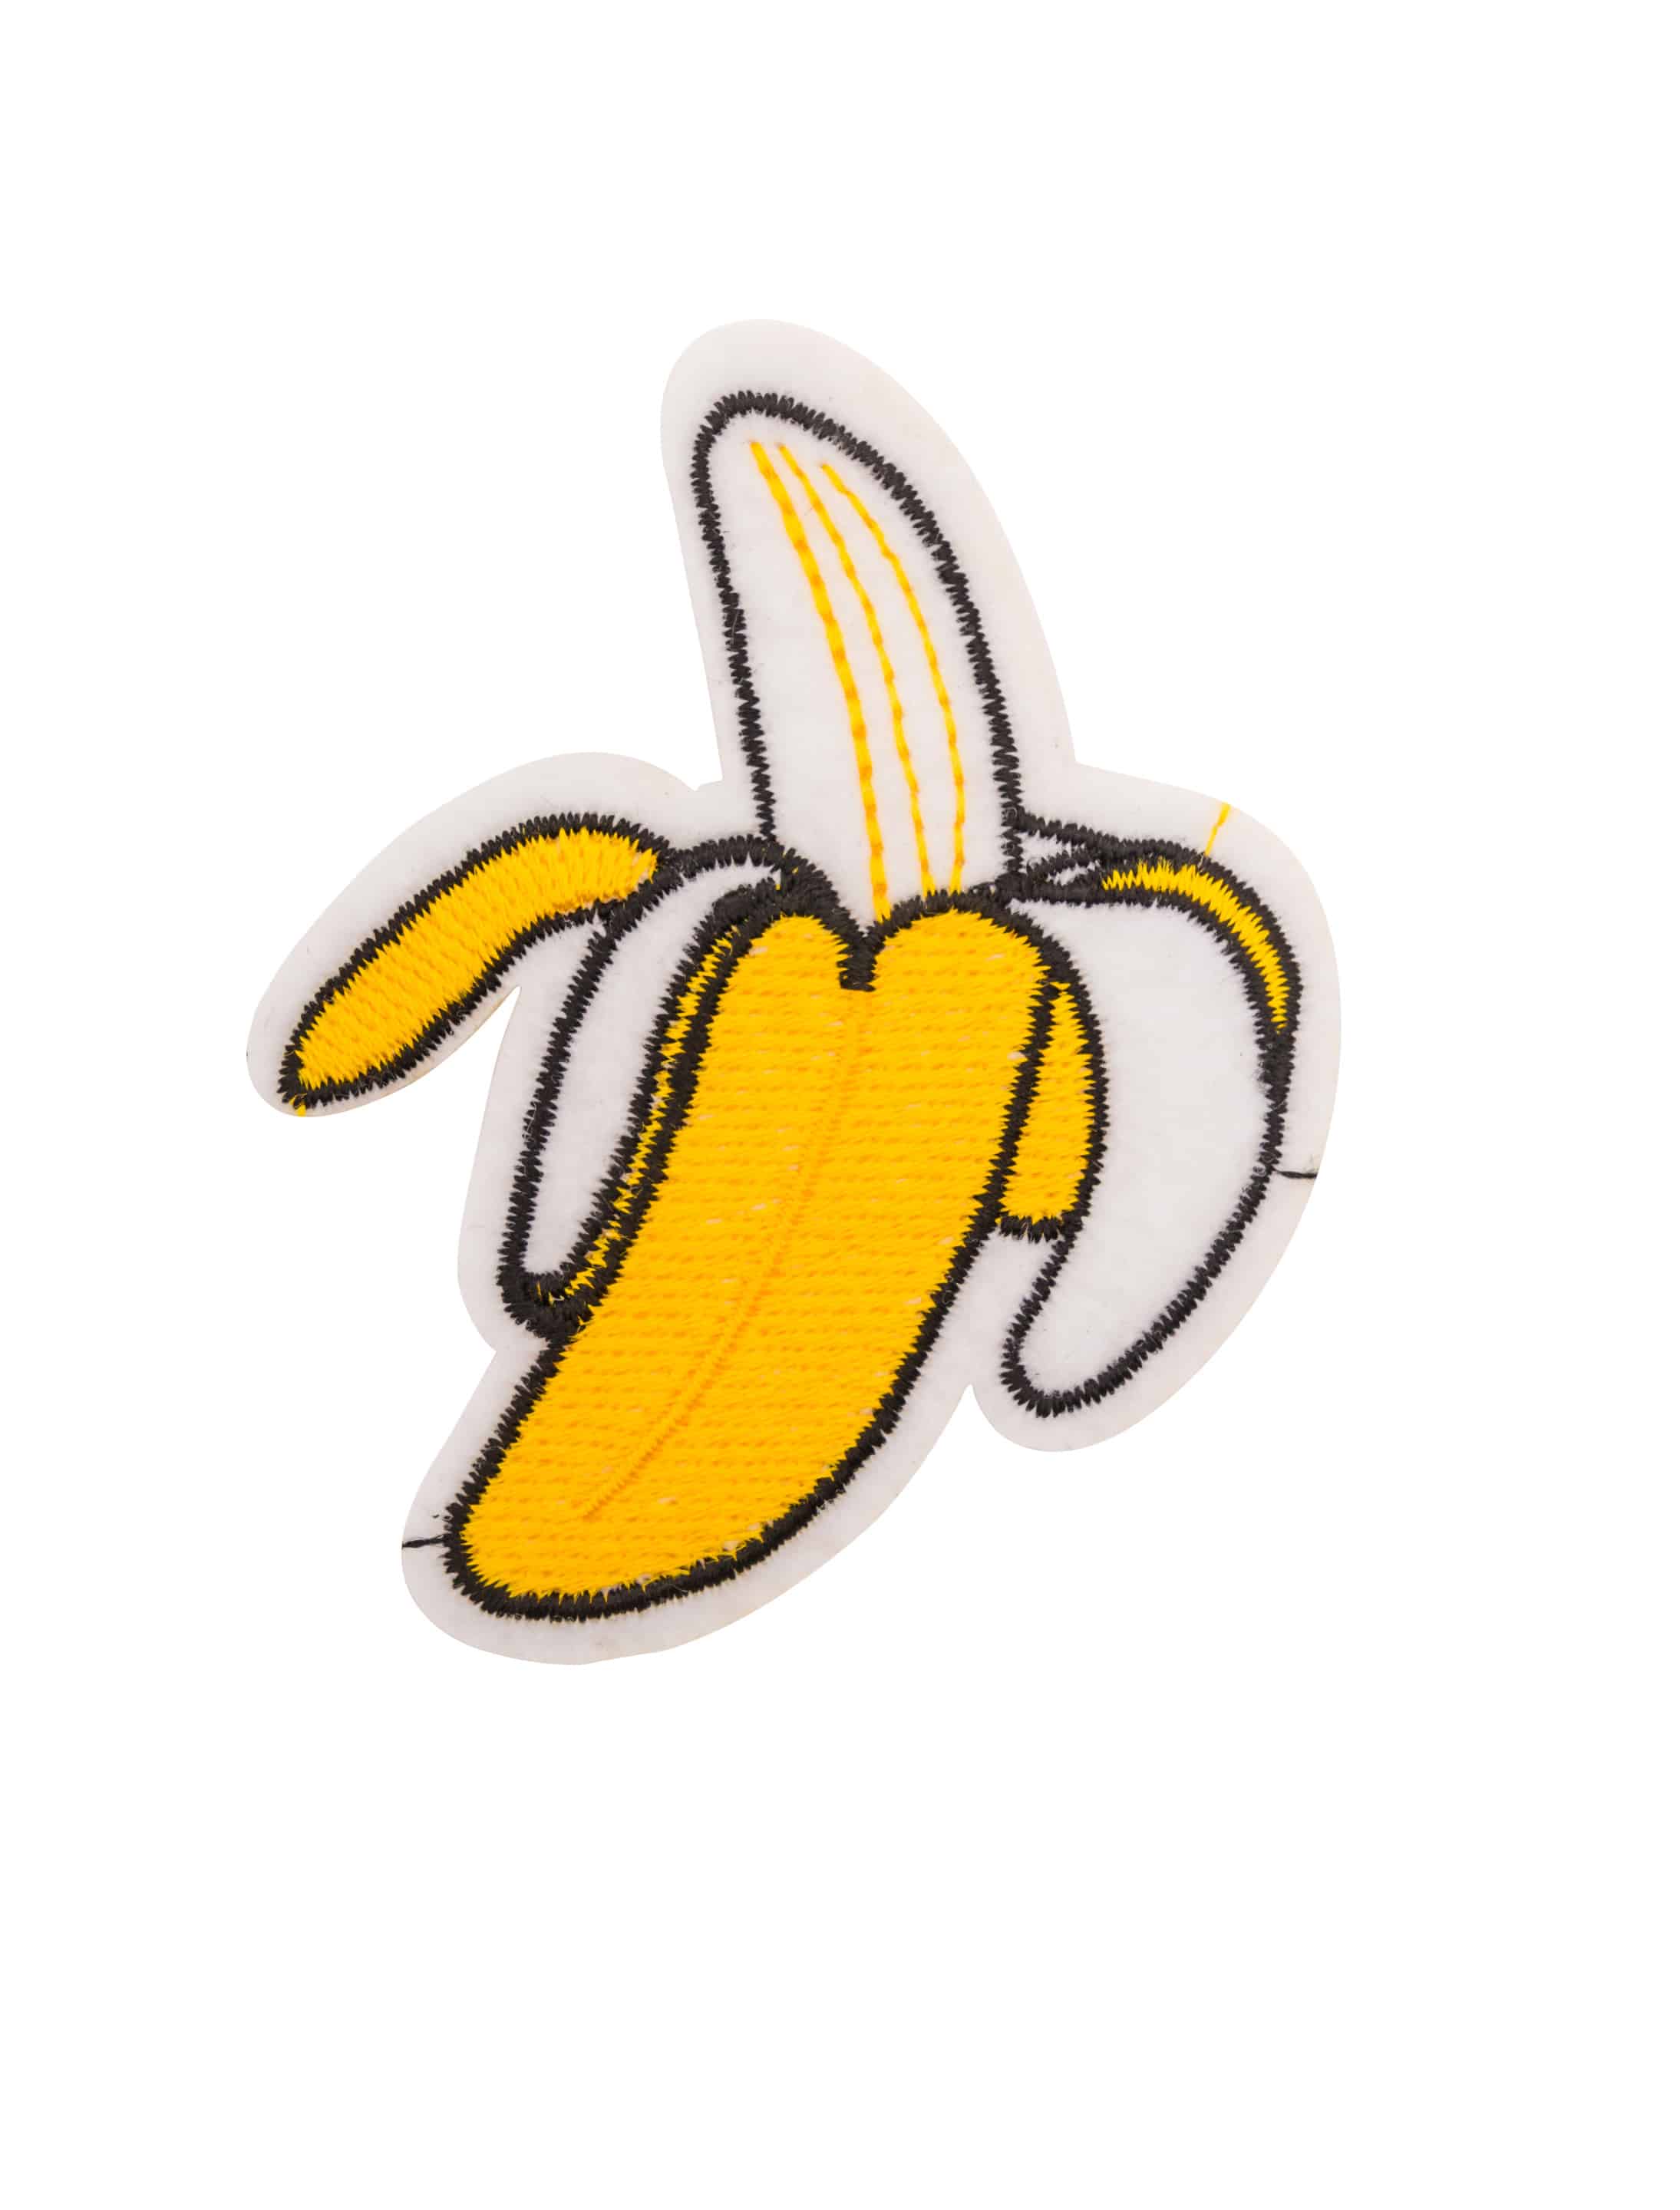 Aufnäher/Bügelbild Banane 8cm gelb